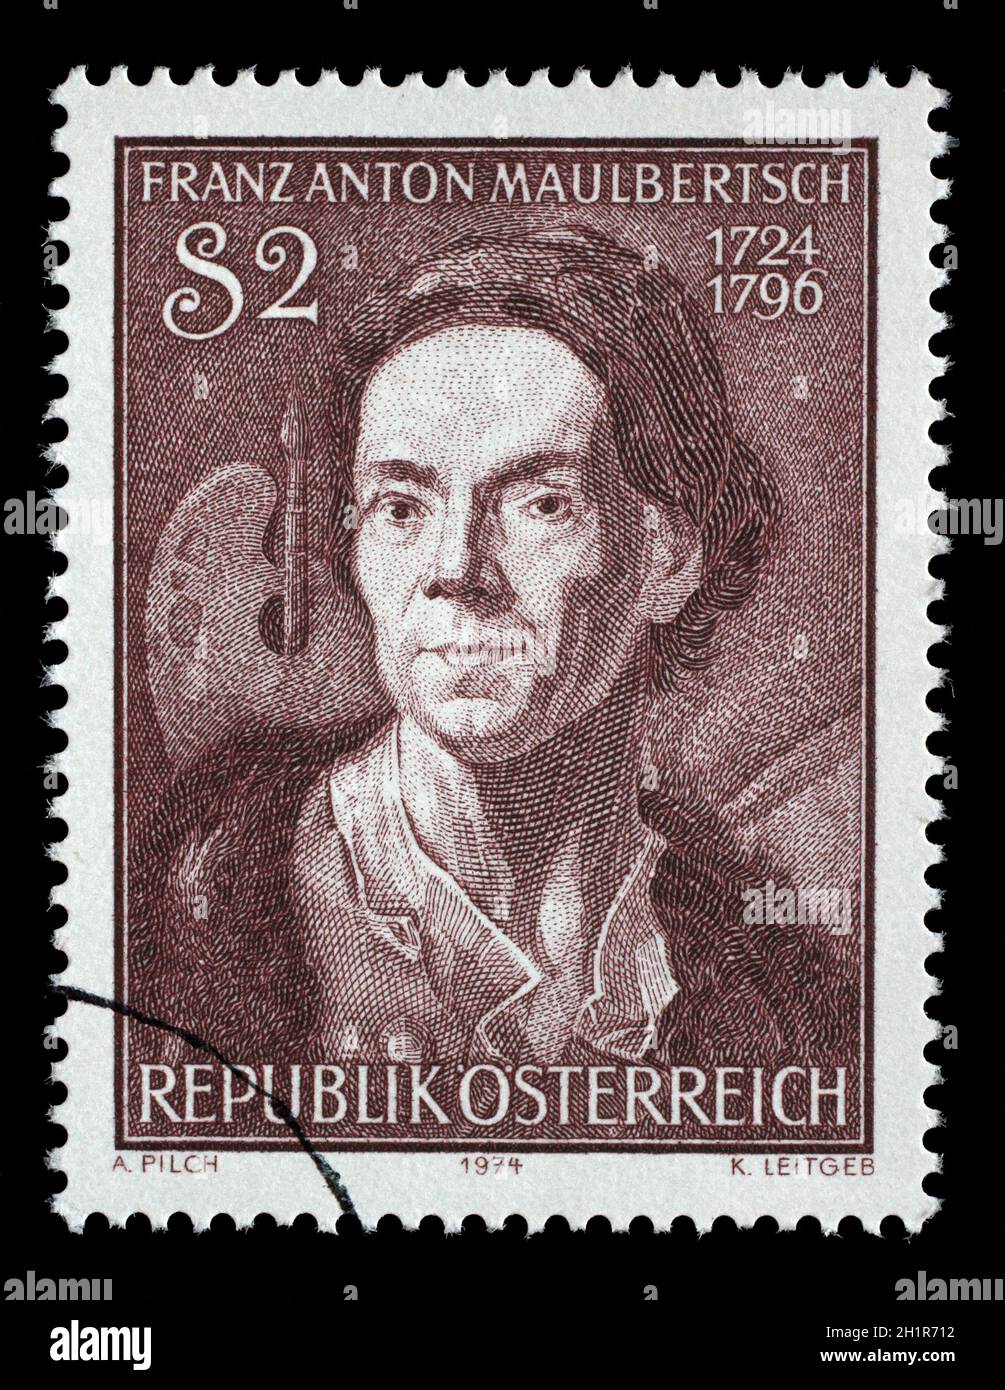 Briefmarke gedruckt von Österreich, zeigt Franz Anton Maulbertsch, österreichischer Maler und Kupferstecher, um 1974 Stockfoto